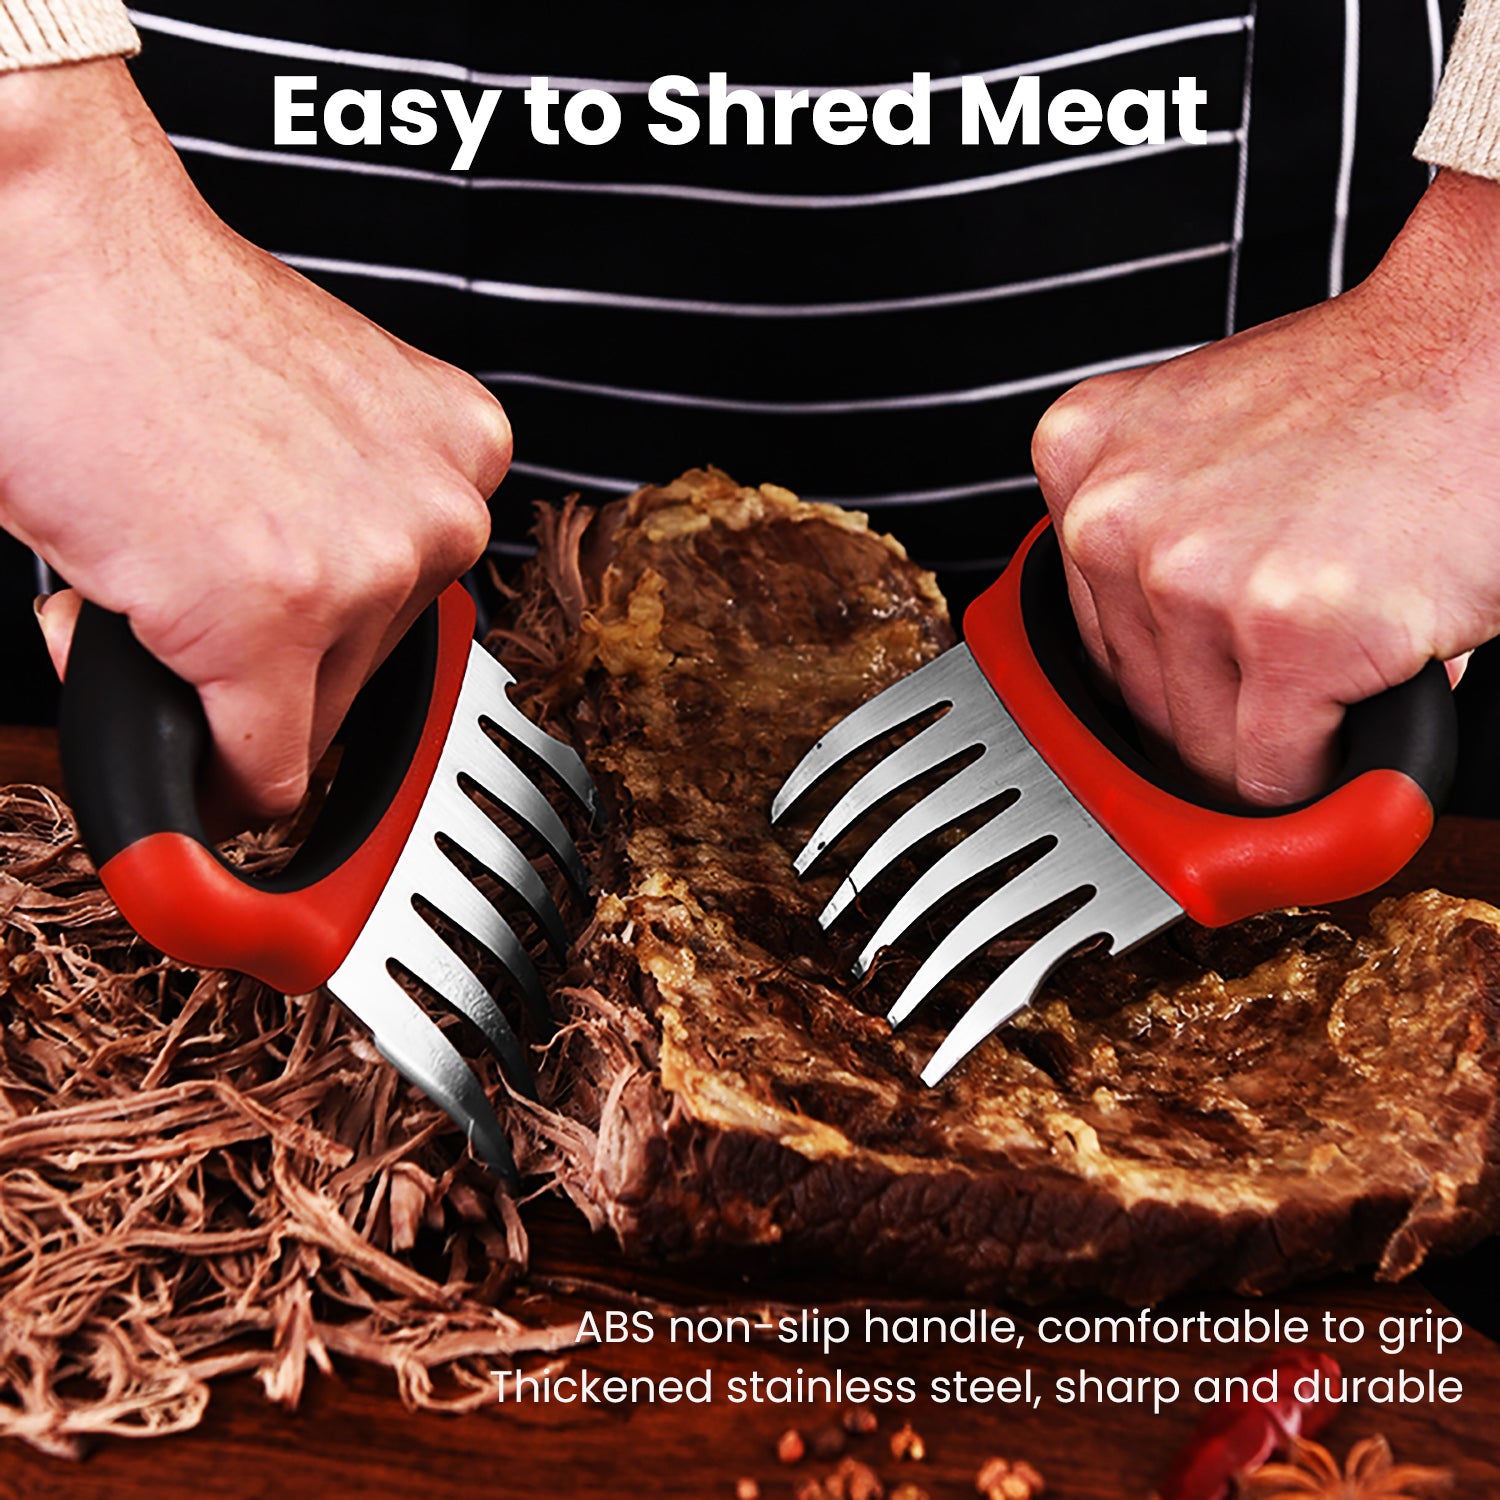 Meat Shredding Claws